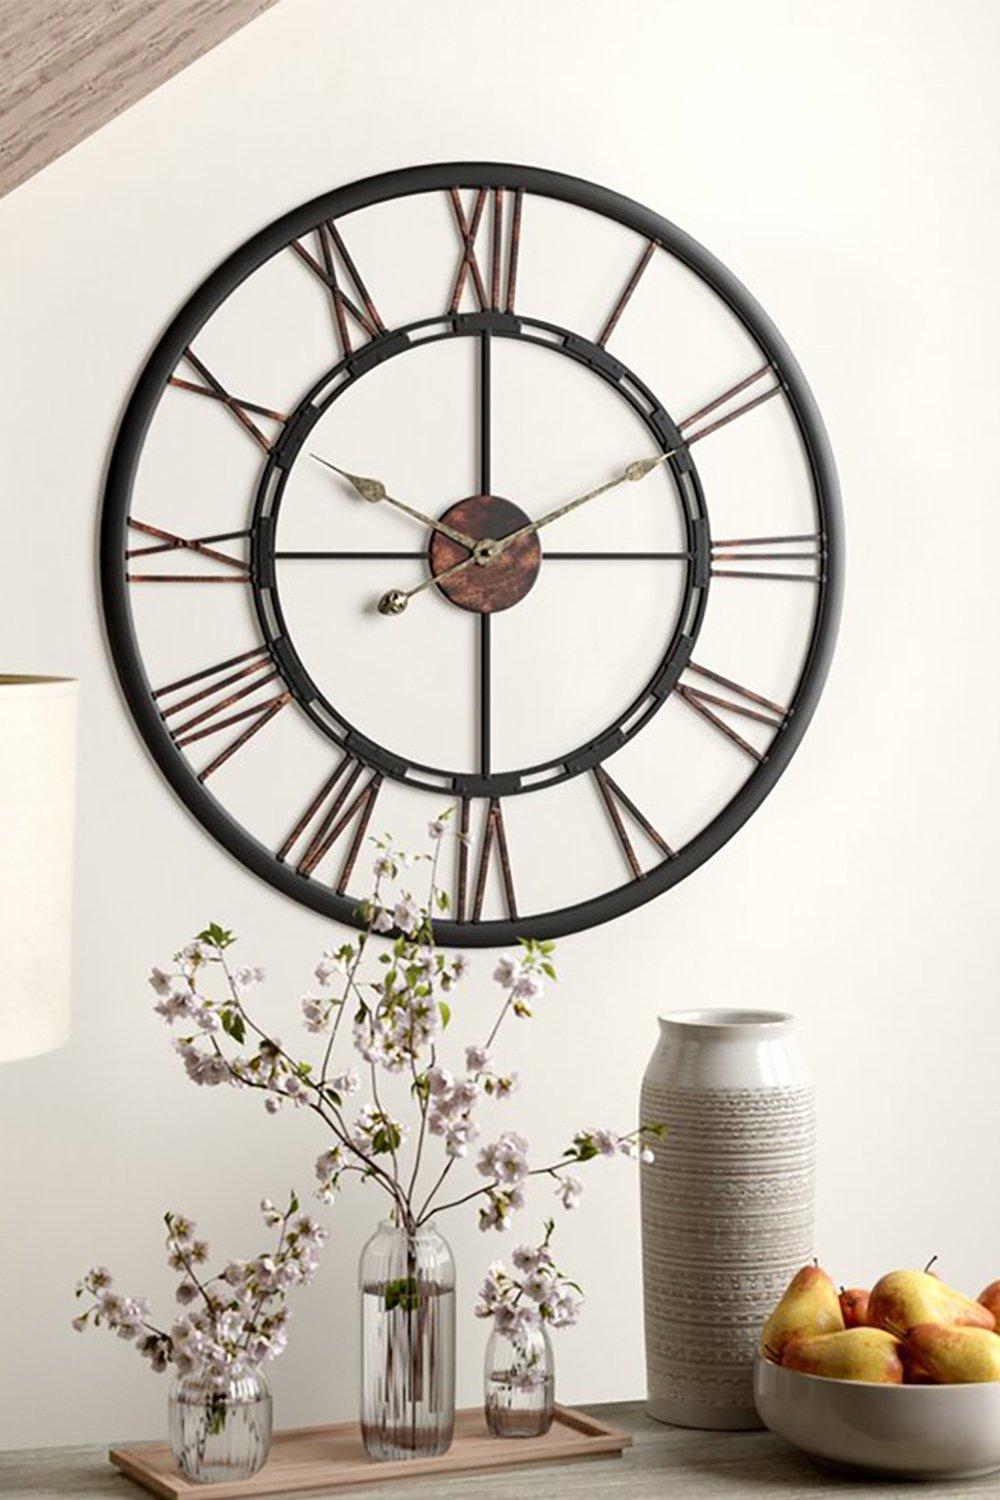 D60Cm Large Vintage Silent Decorative Wall Clock